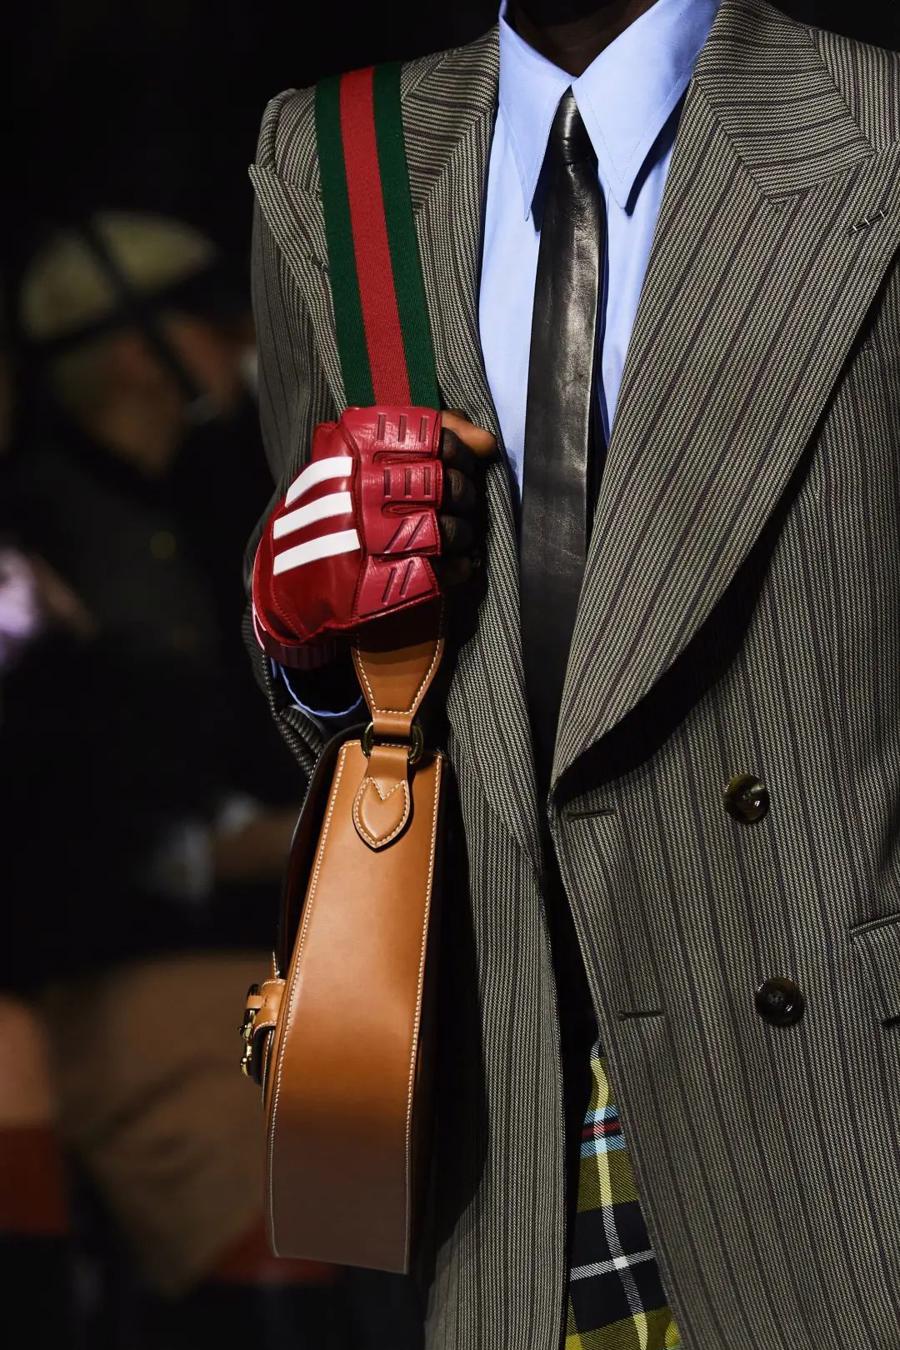 Gucci “bắt tay” Adidas: BST đảm bảo doanh thu nhất năm 2022 - Ảnh 21